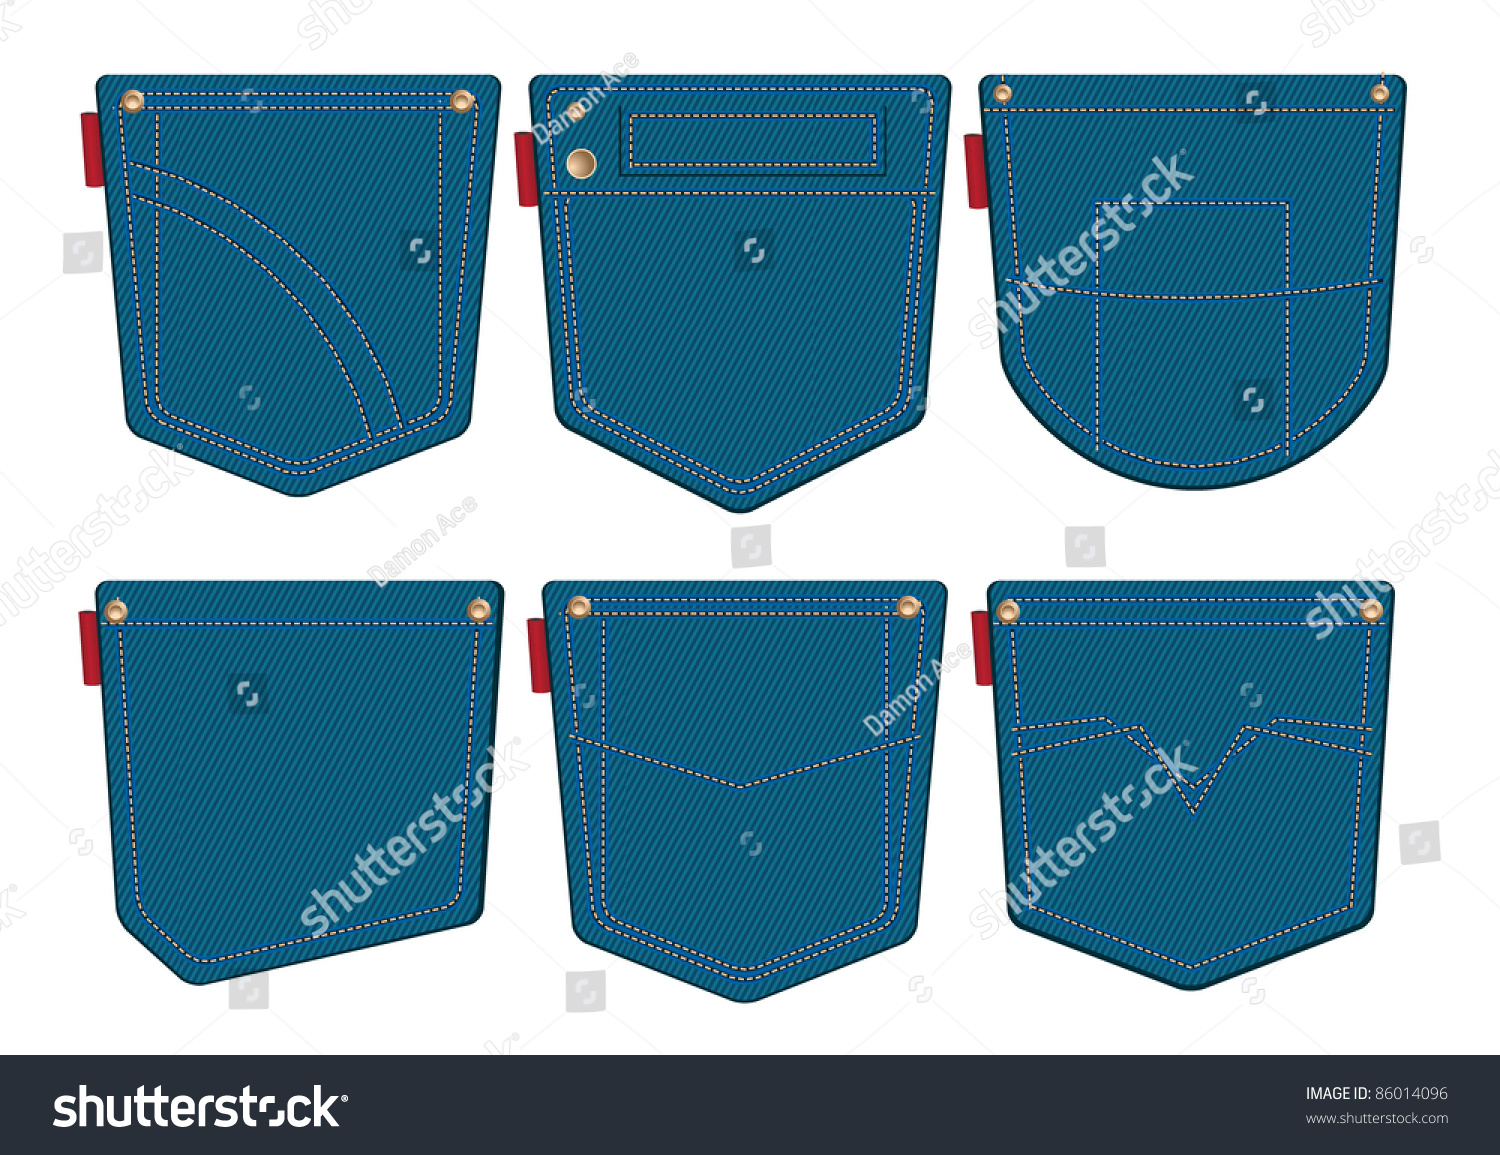 Set Of Jeans Pocket Design Stock Vector Illustration 86014096 ...